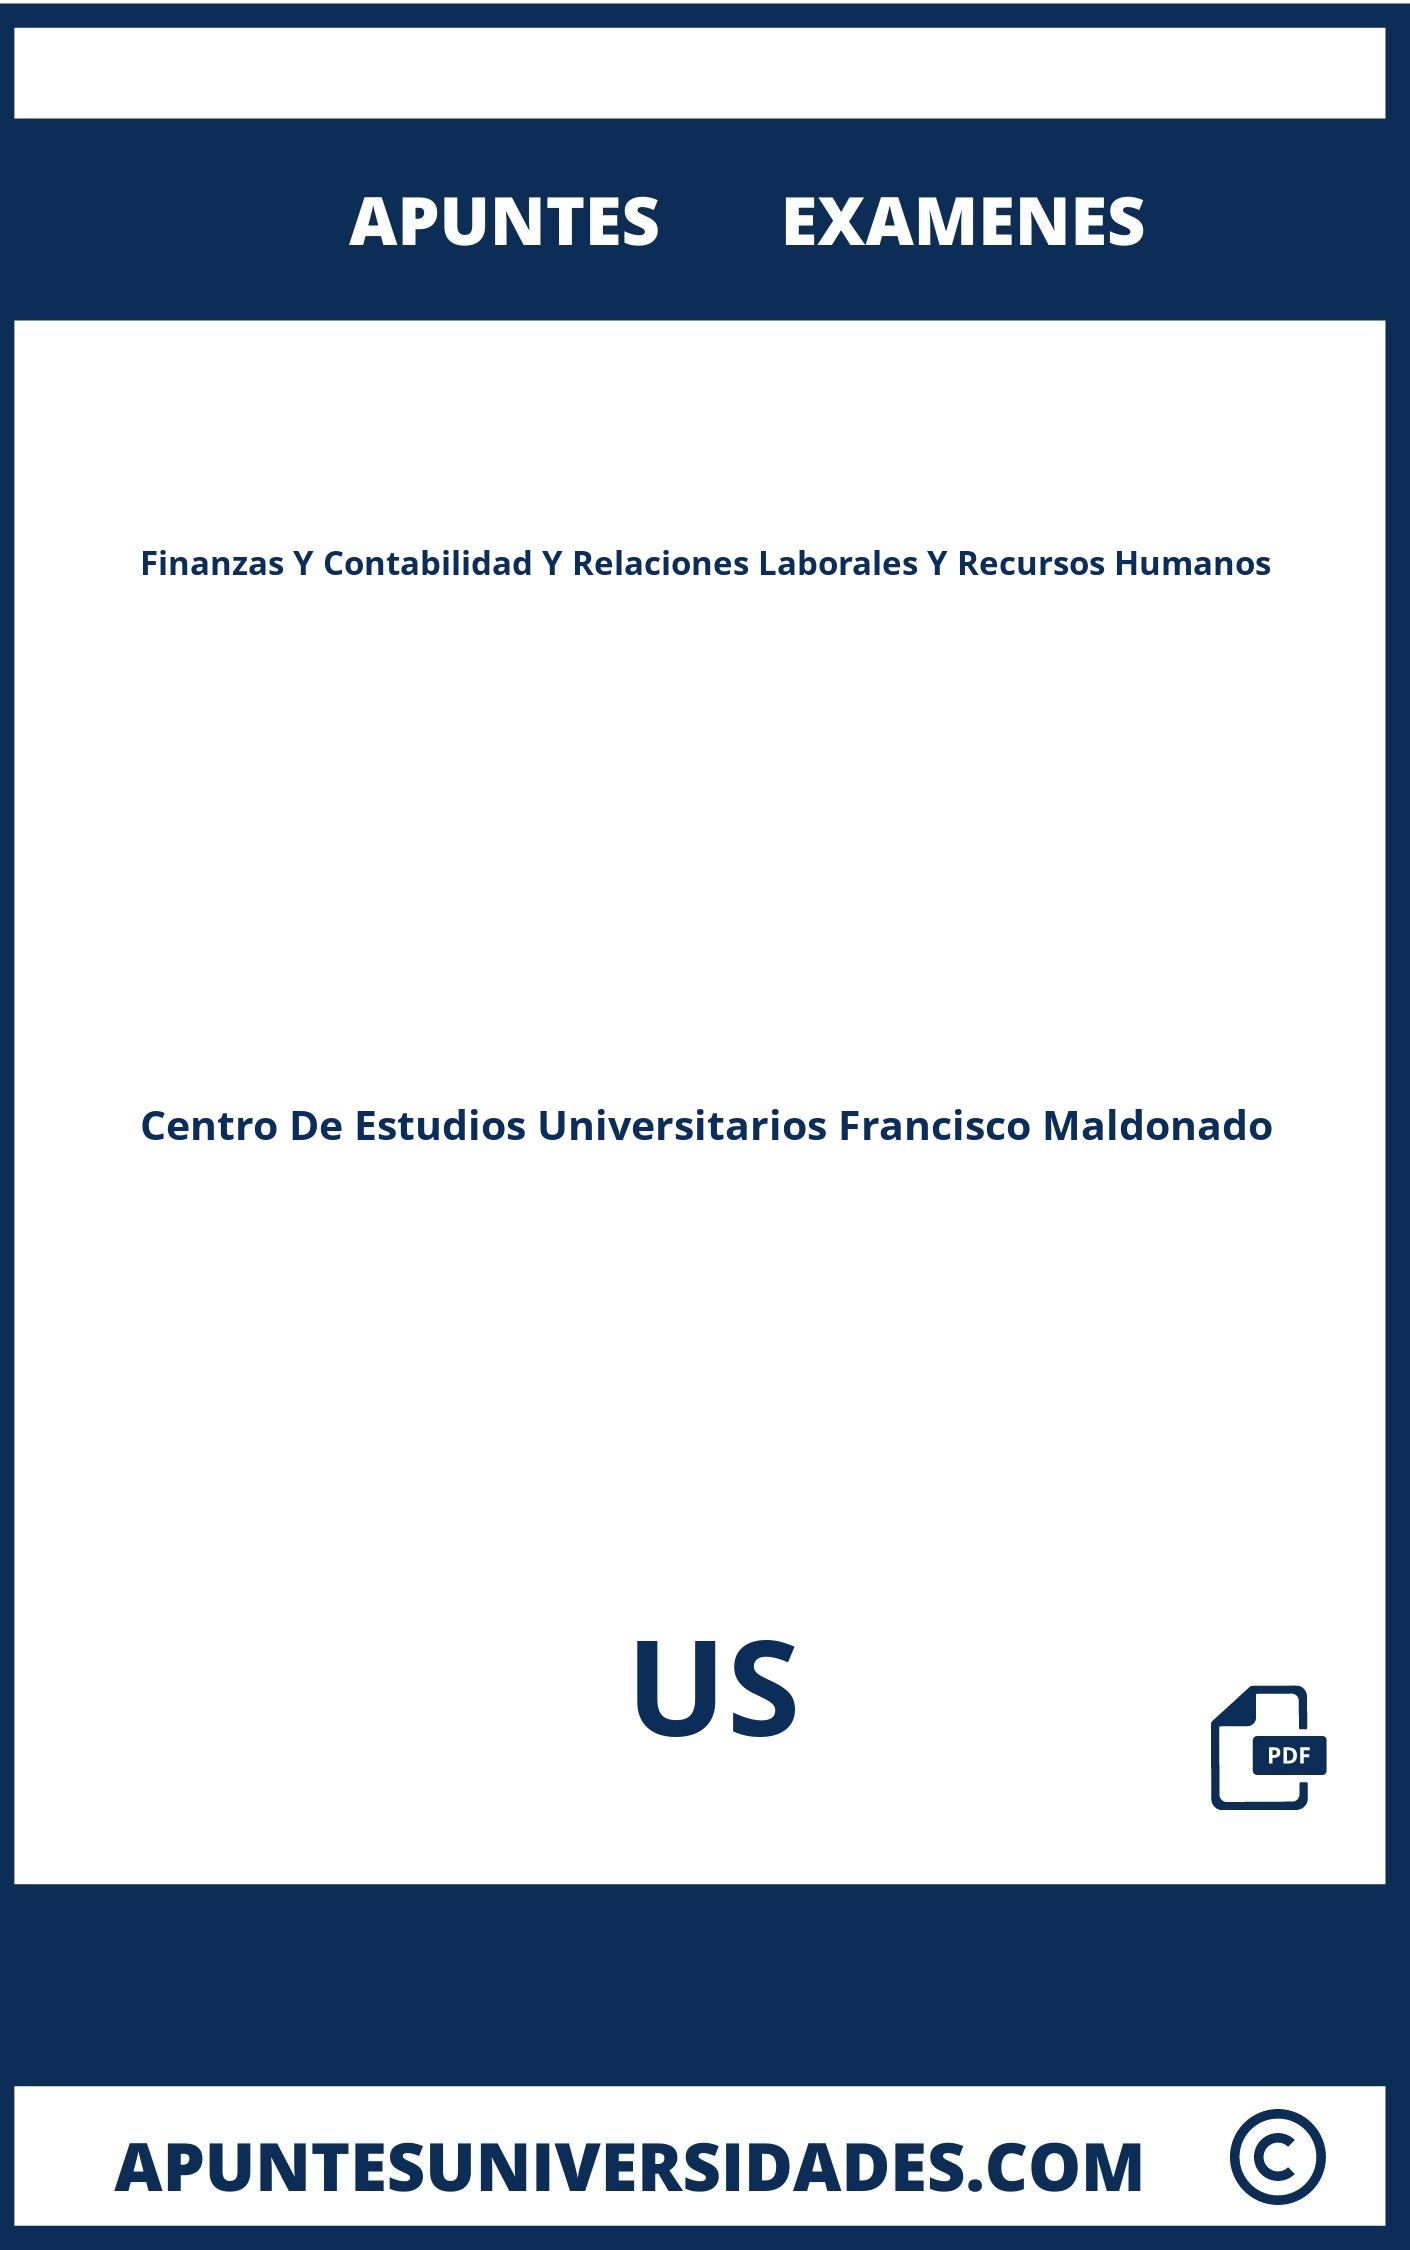 Examenes y Apuntes de Finanzas Y Contabilidad Y Relaciones Laborales Y Recursos Humanos US